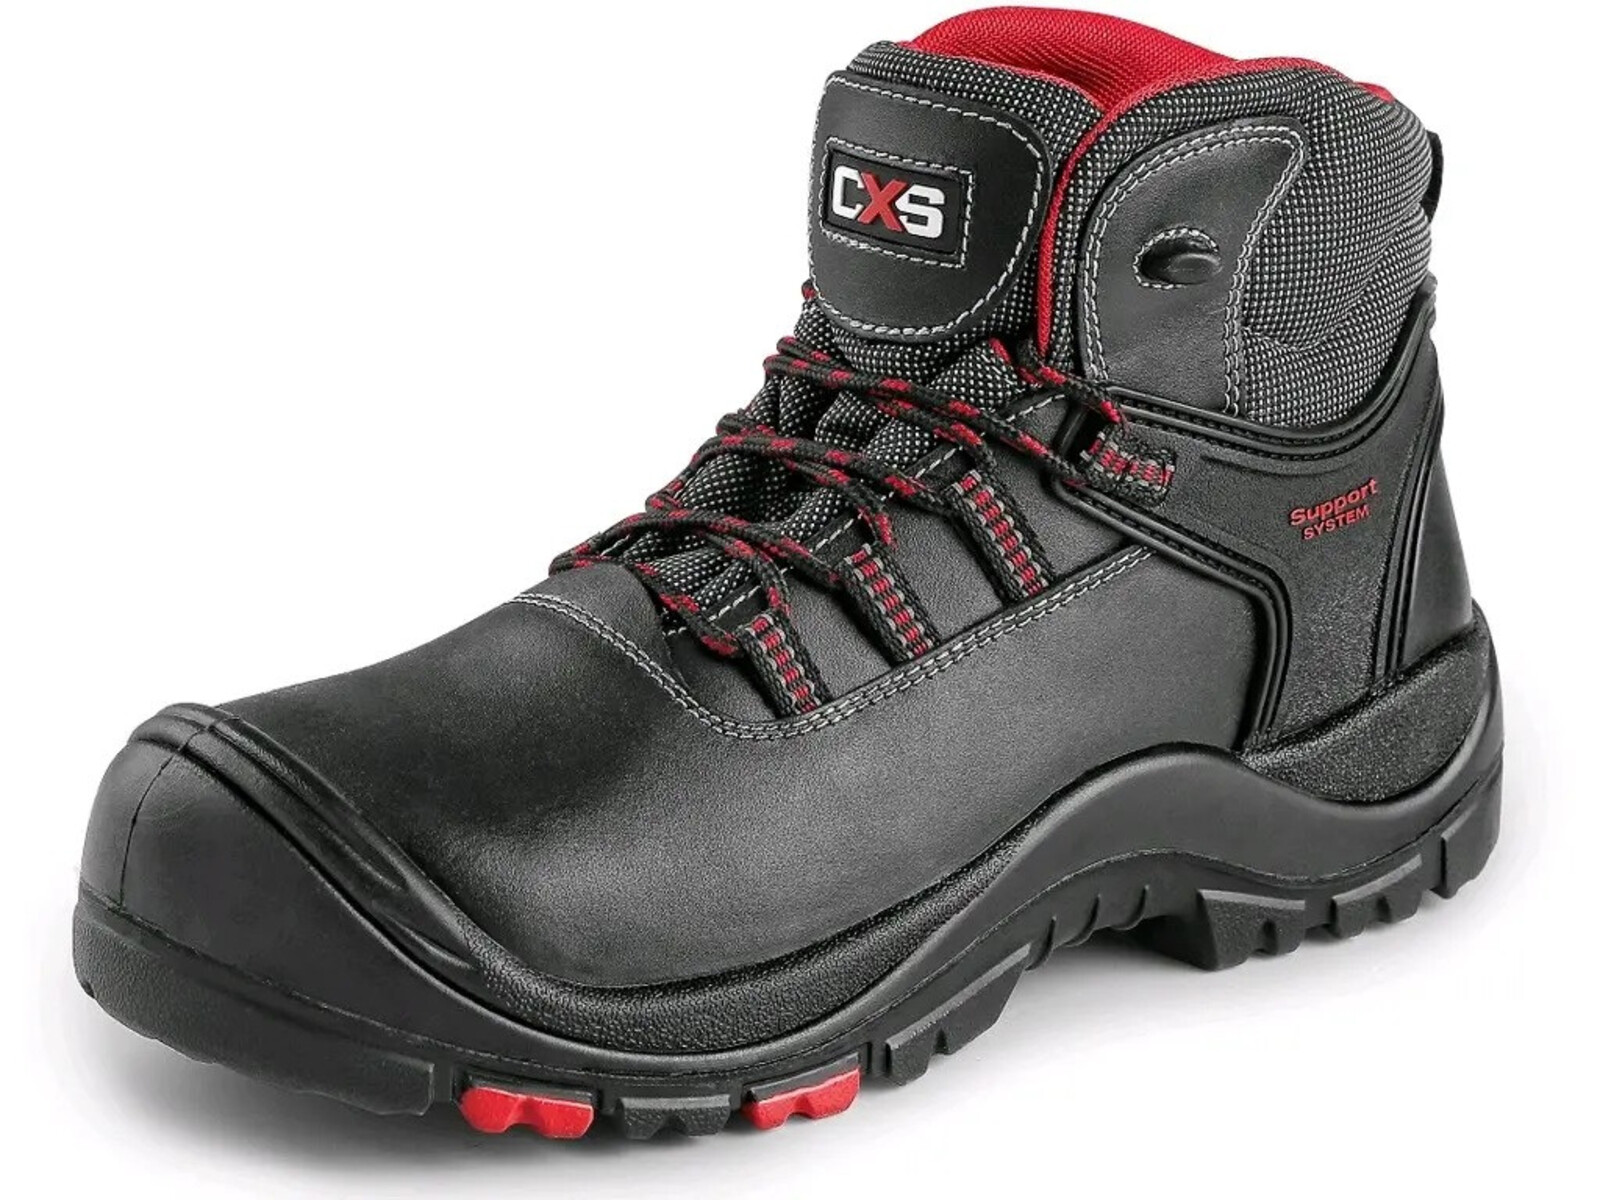 Bezpečnostná členková obuv CXS Rock Granite S3 SRC HRO MF - veľkosť: 48, farba: čierna/červená